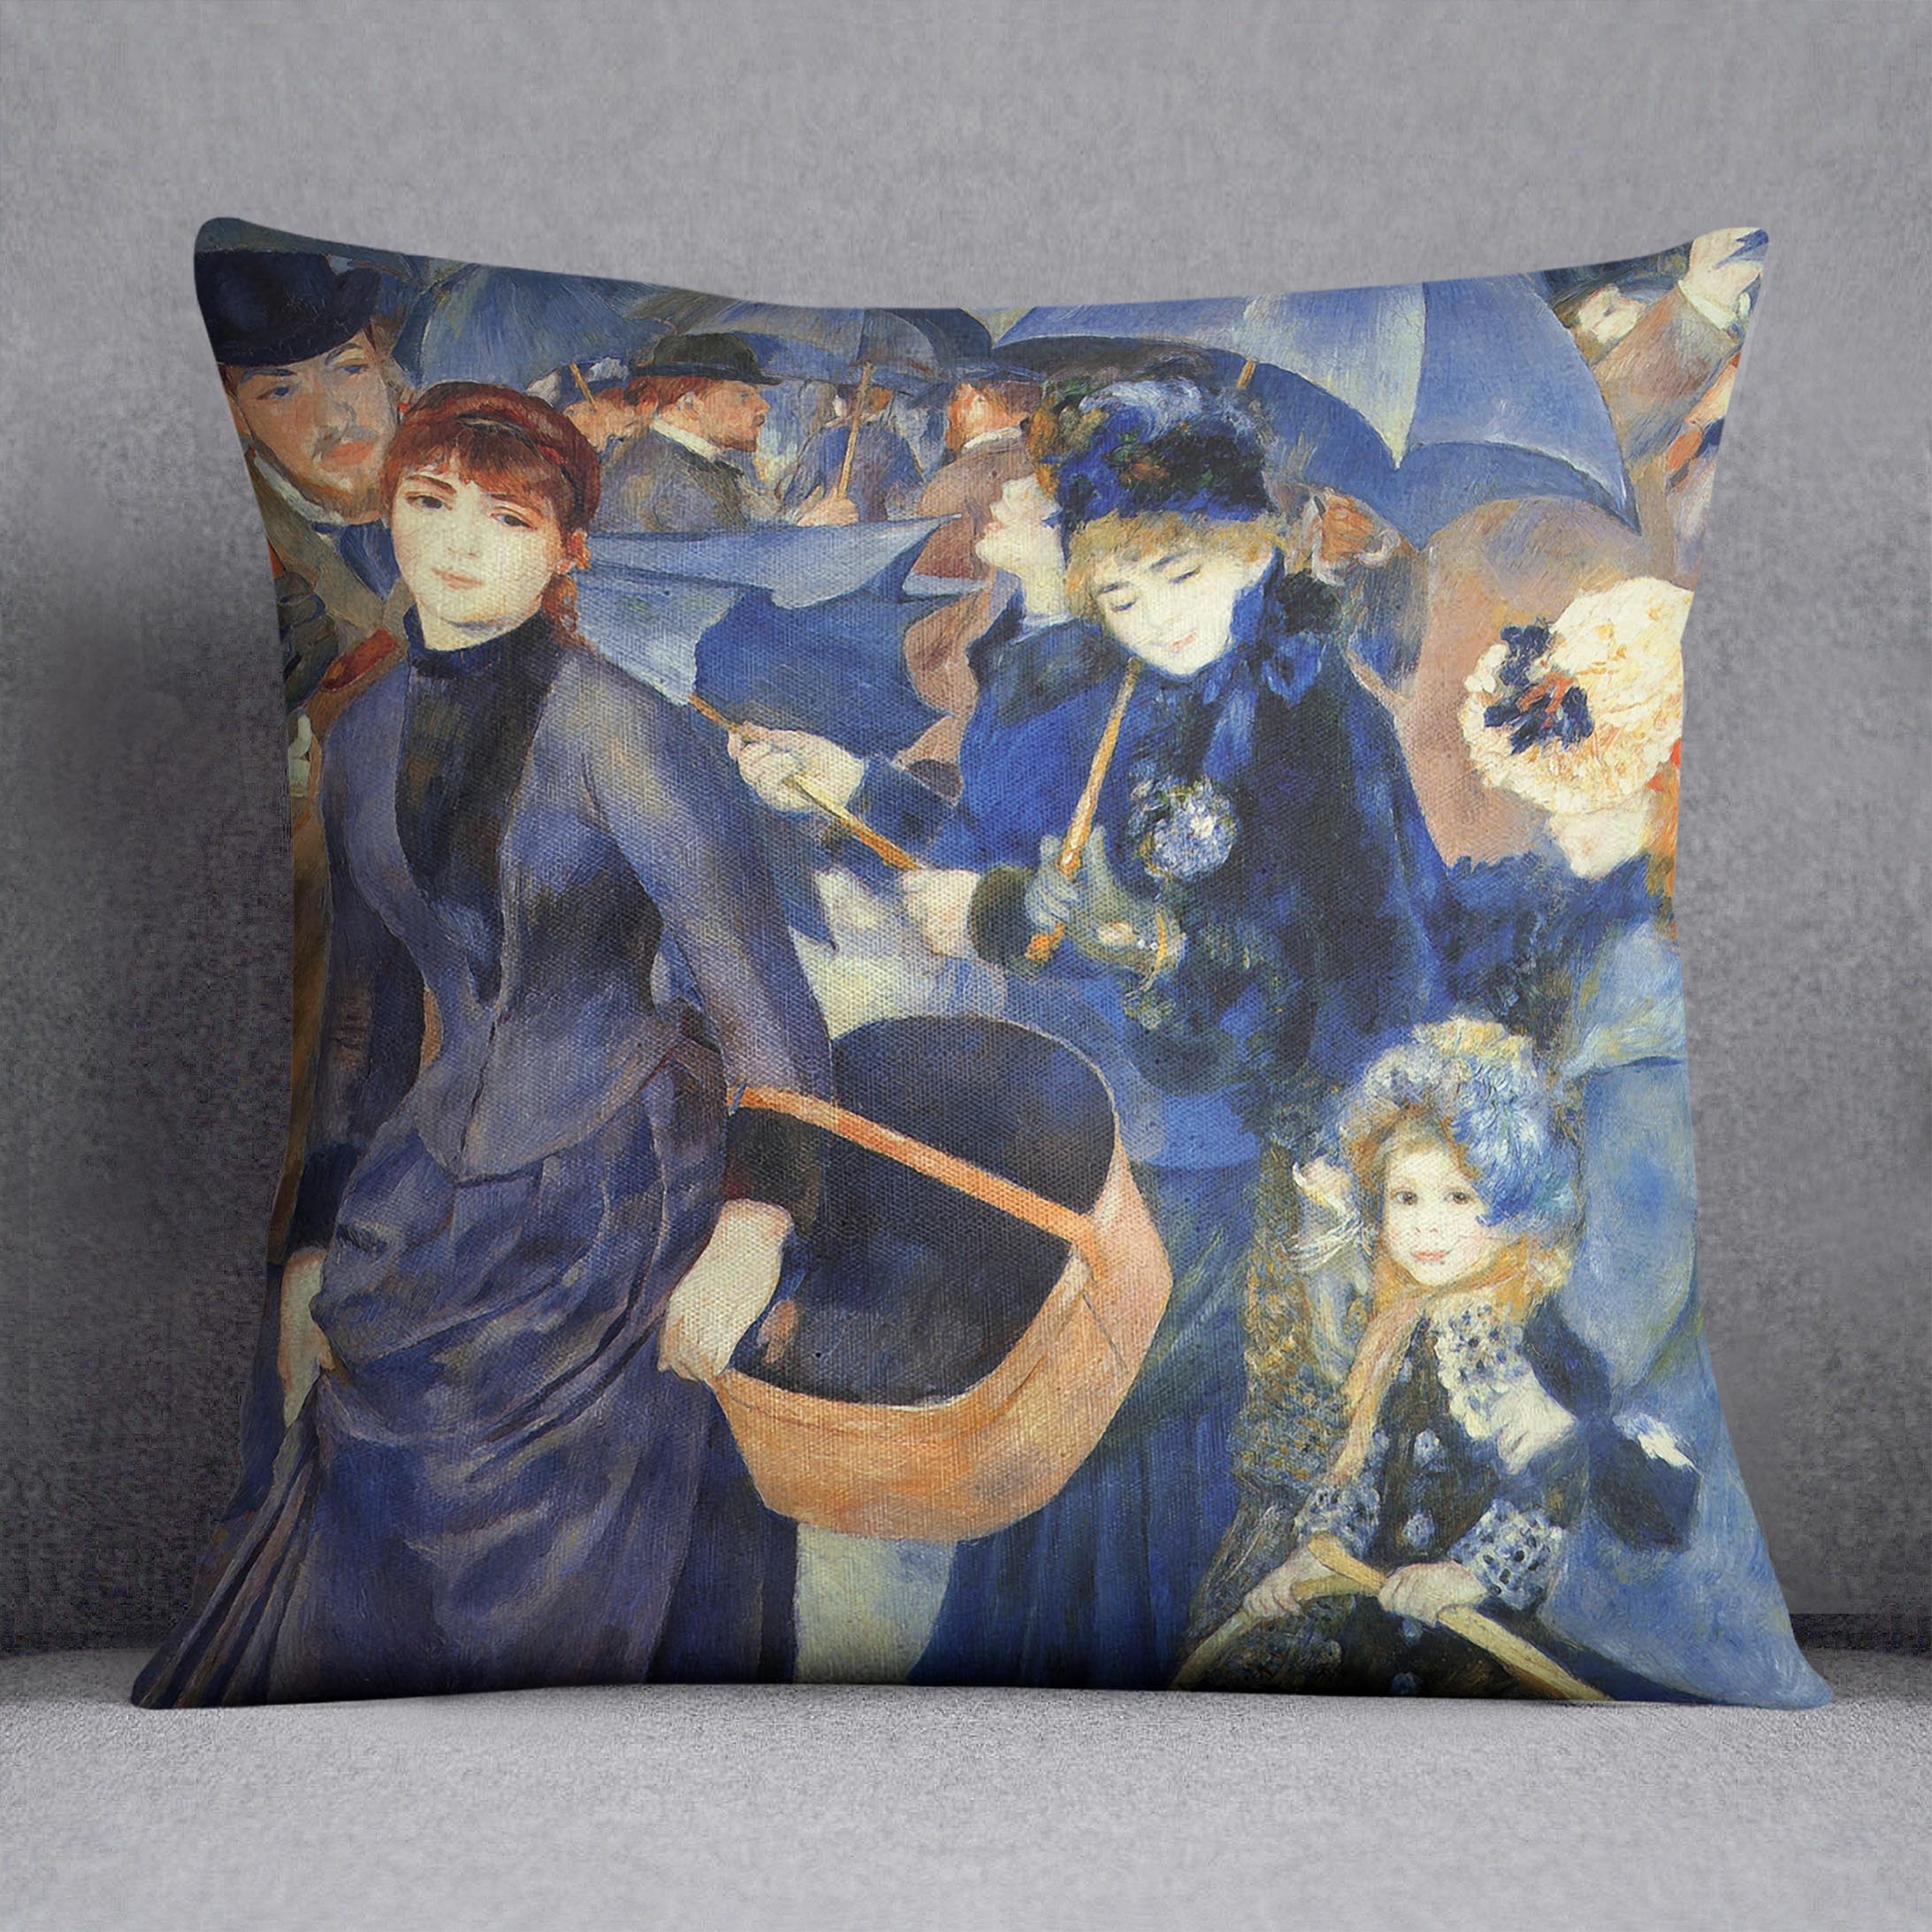 The umbrellas by Renoir Cushion